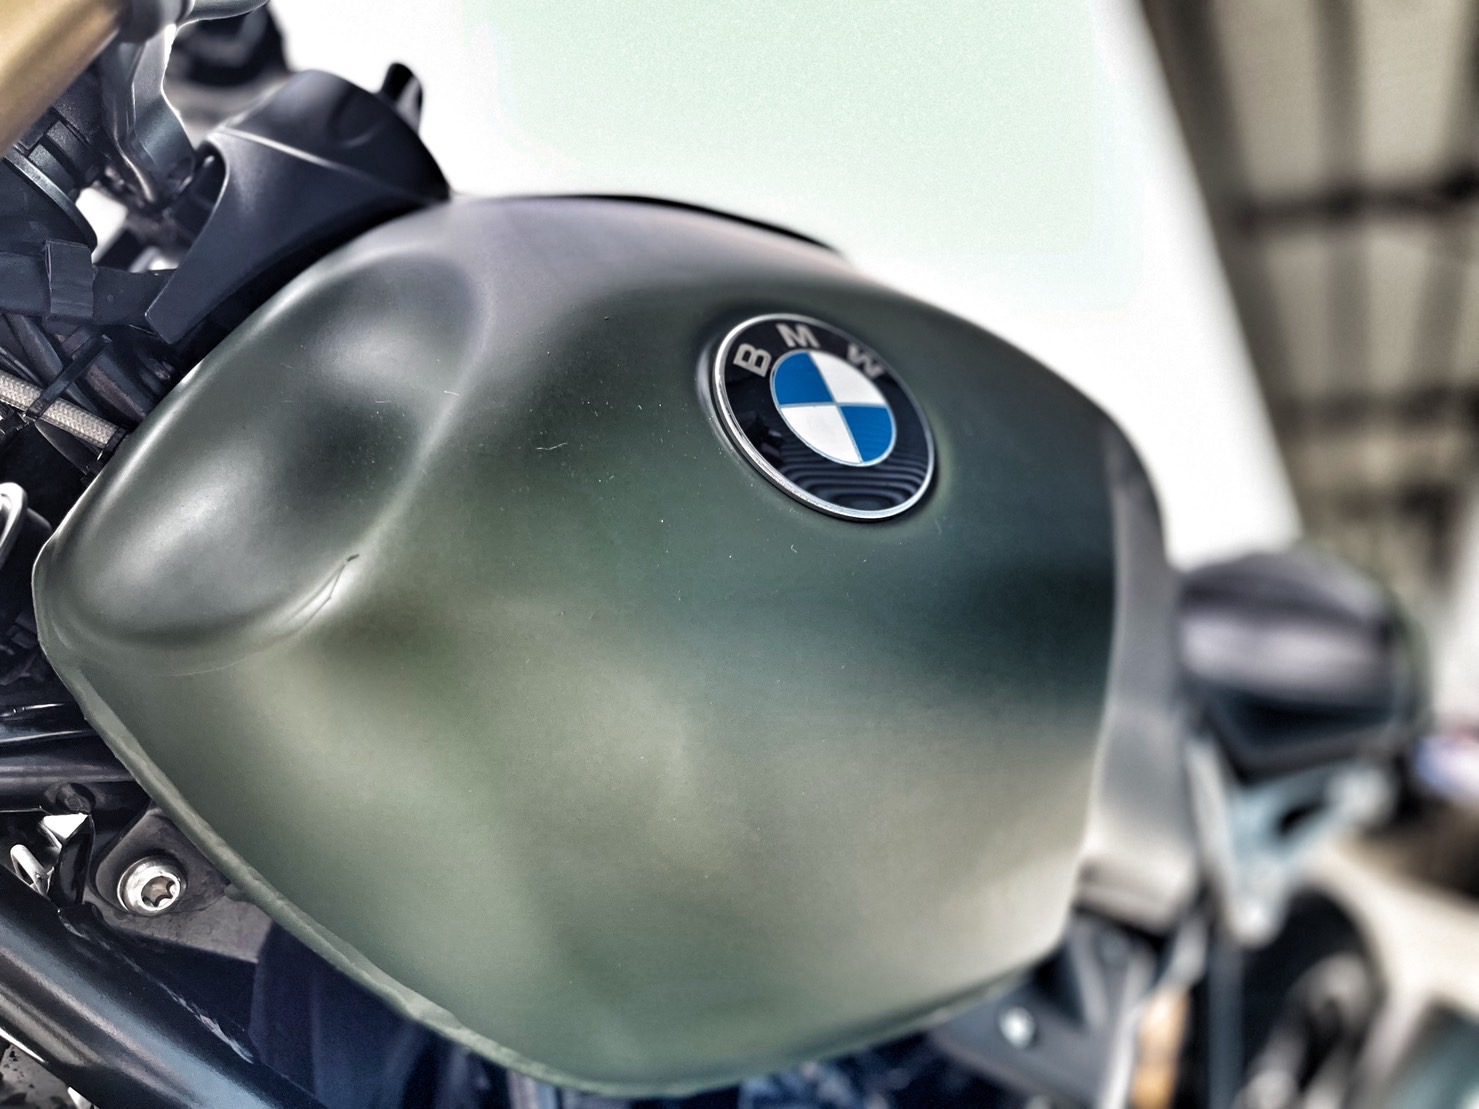 BMW R nineT - 中古/二手車出售中 視覺改裝 無摔無事故 里程保證 小資族二手重機買賣 | 小資族二手重機買賣